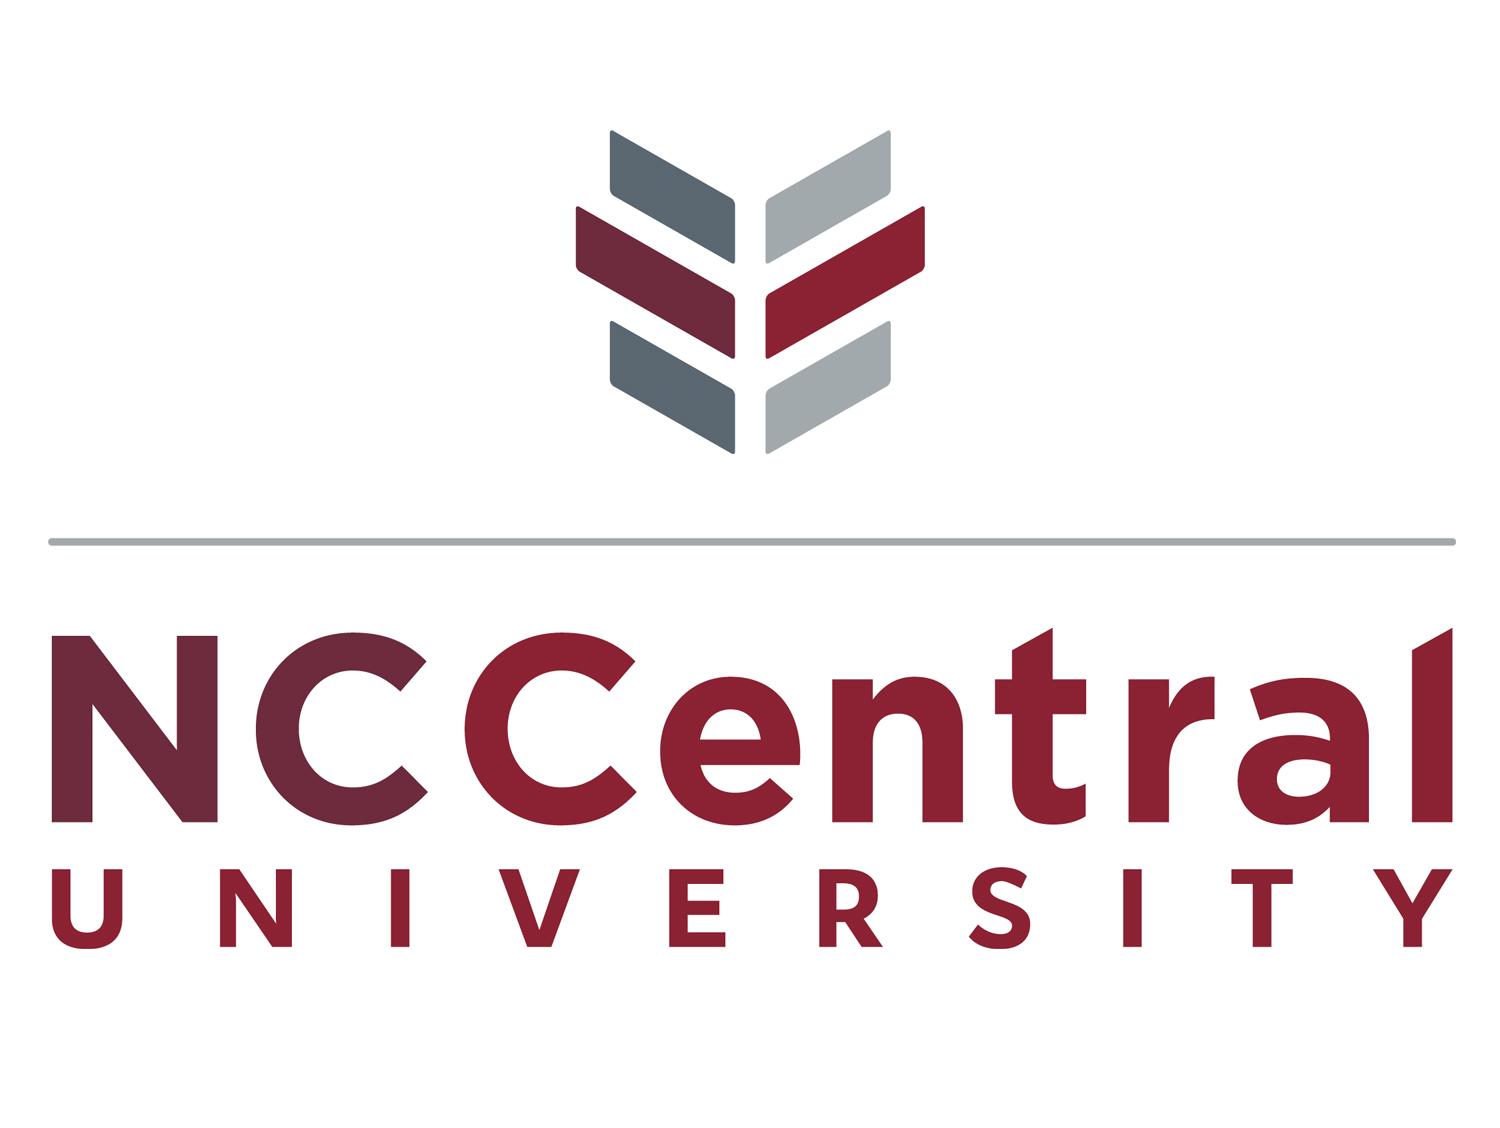 NCCU logo